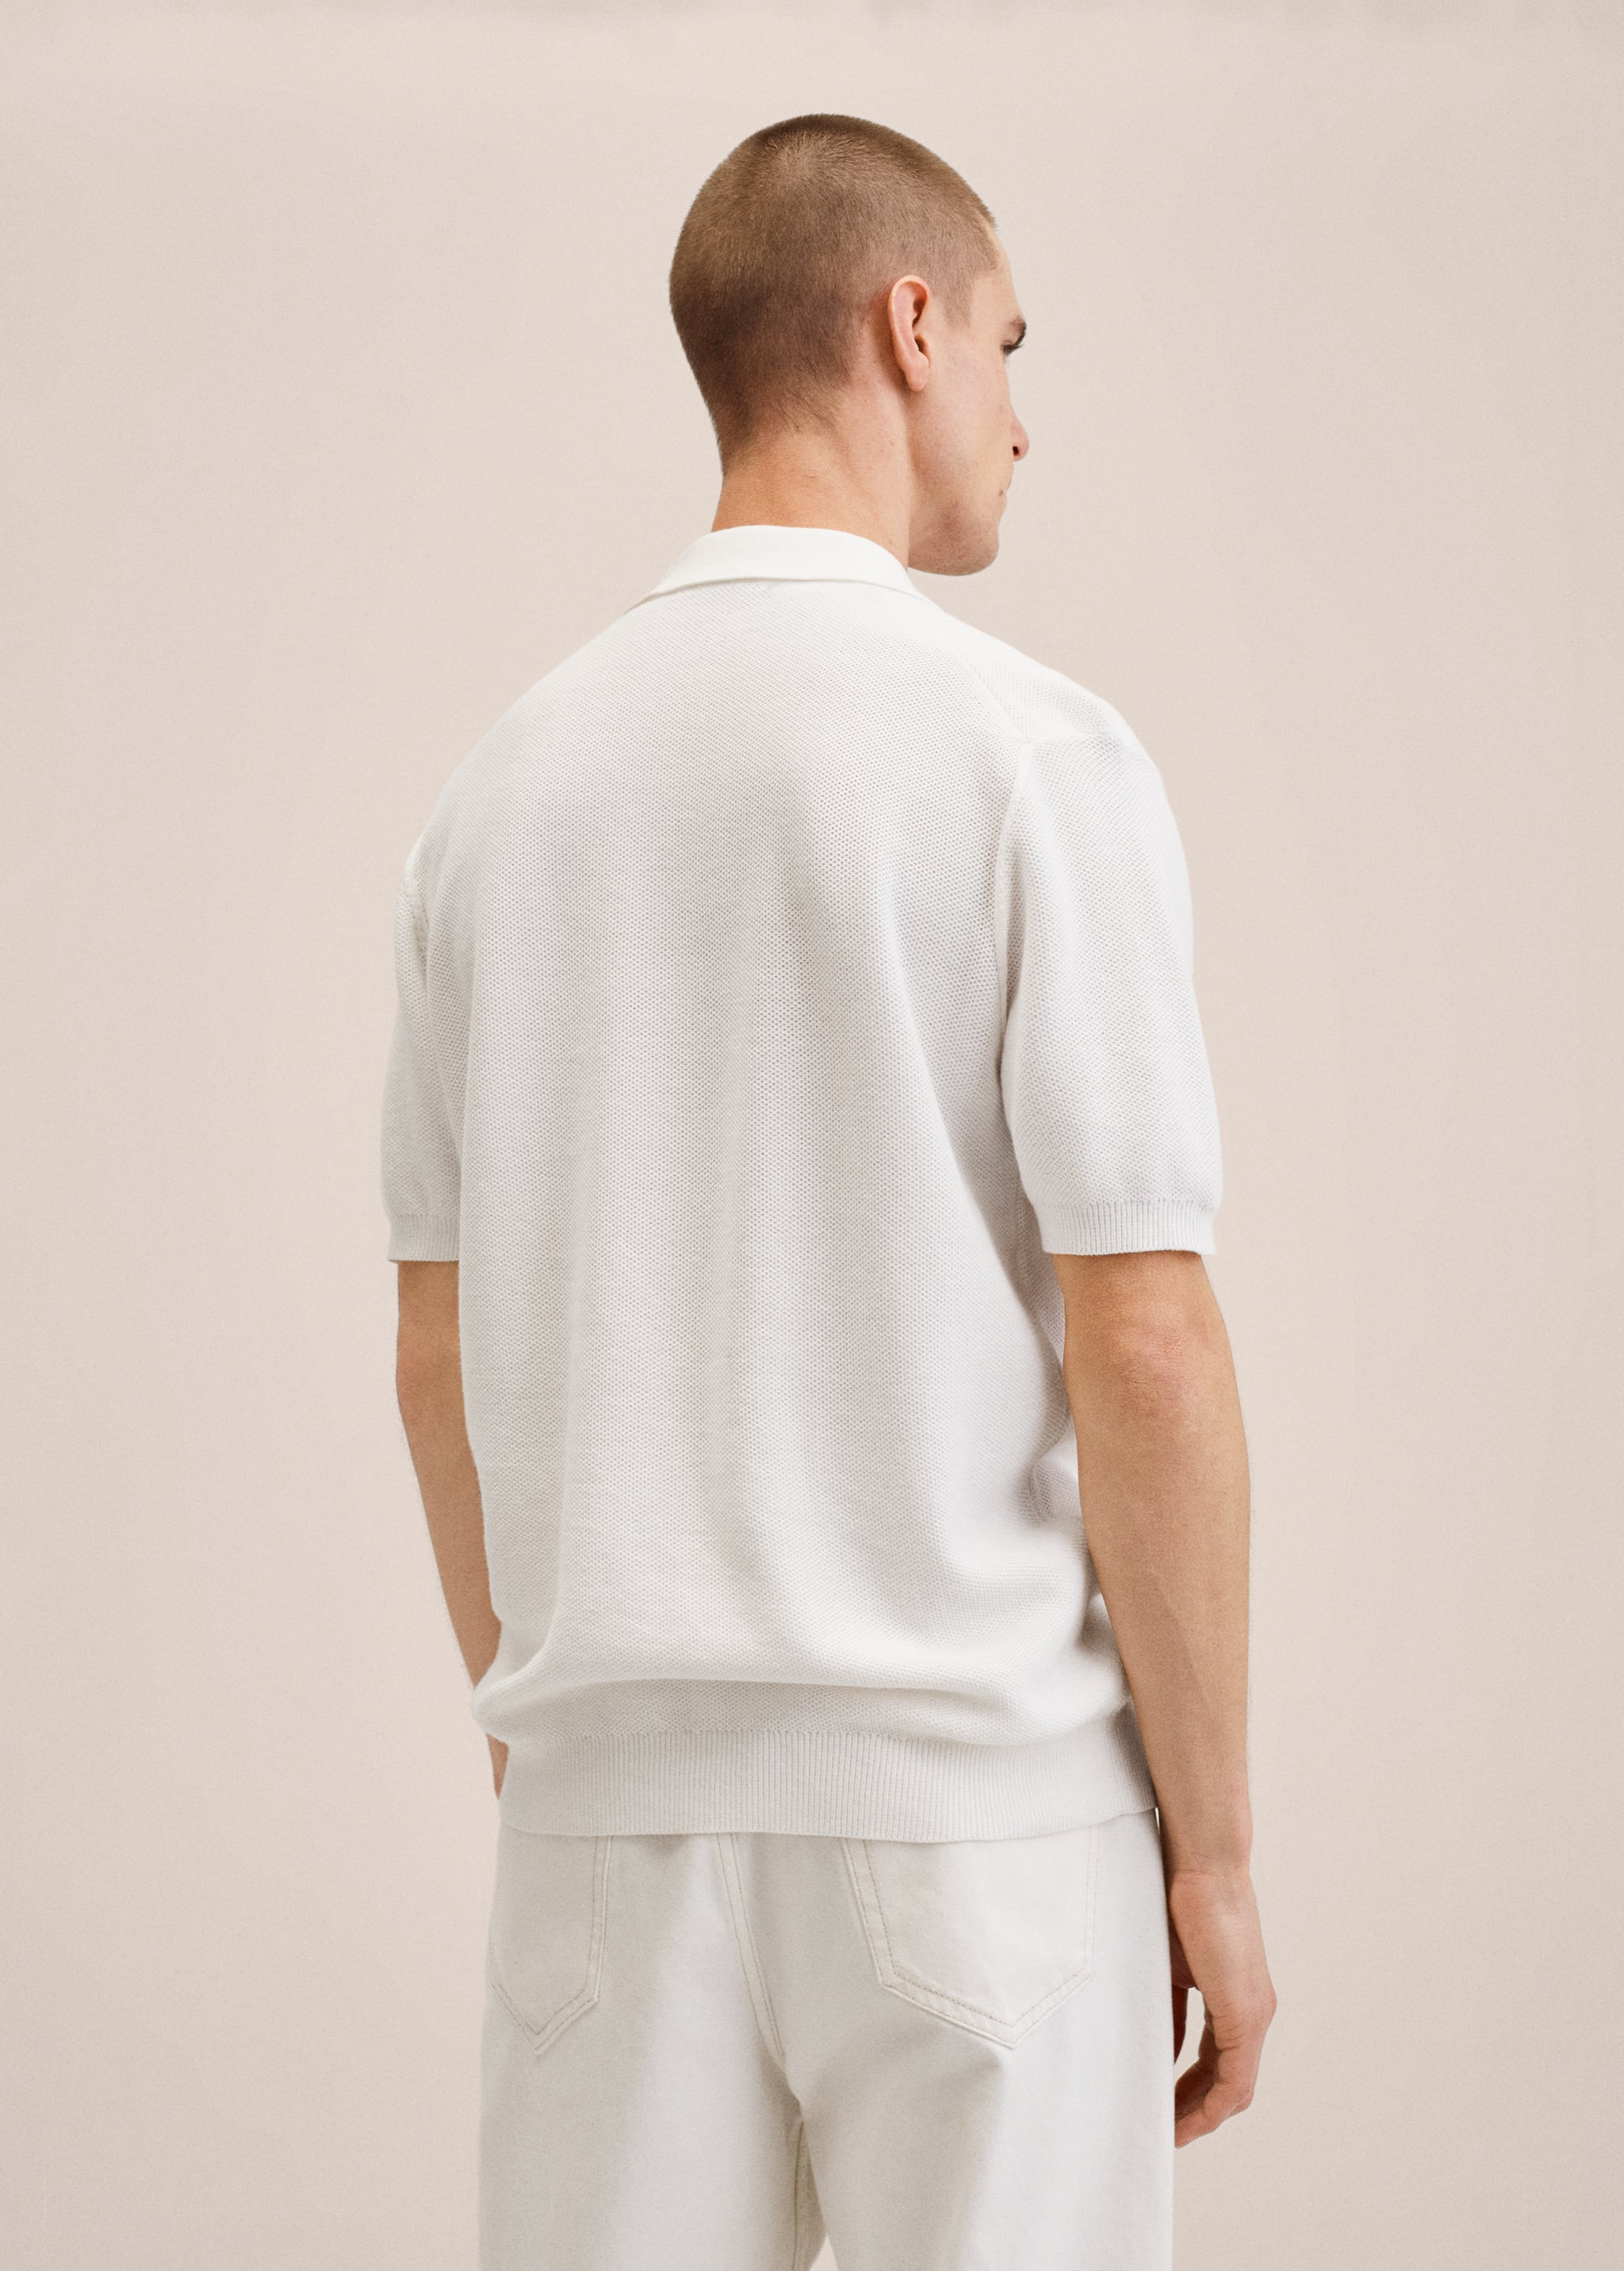 Strukturiertes Baumwoll-Poloshirt - Rückseite des Artikels